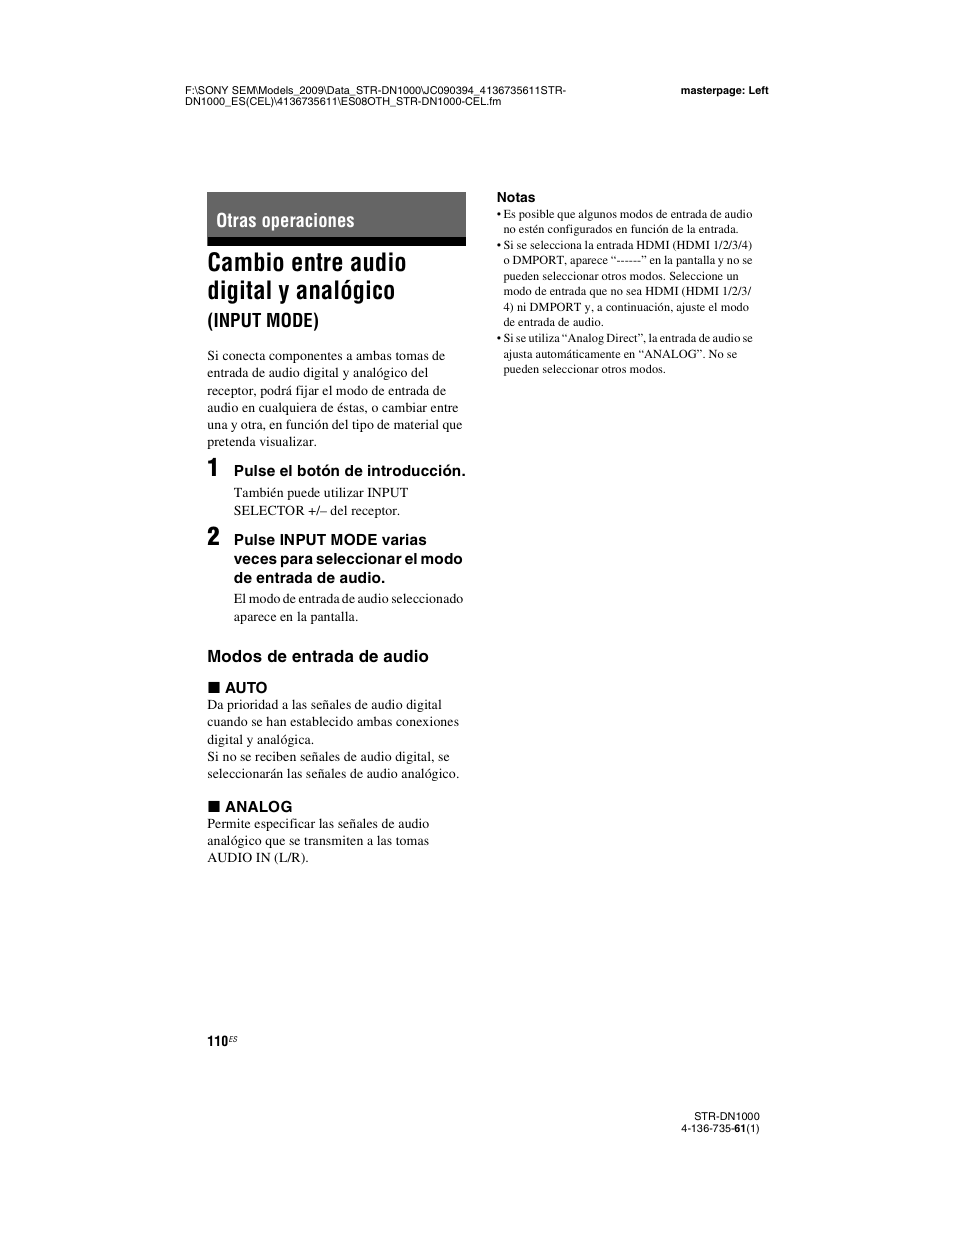 Otras operaciones, Cambio entre audio digital y analógico, Input mode) | Sony STR-DN1000 Manual del usuario | Página 110 / 144